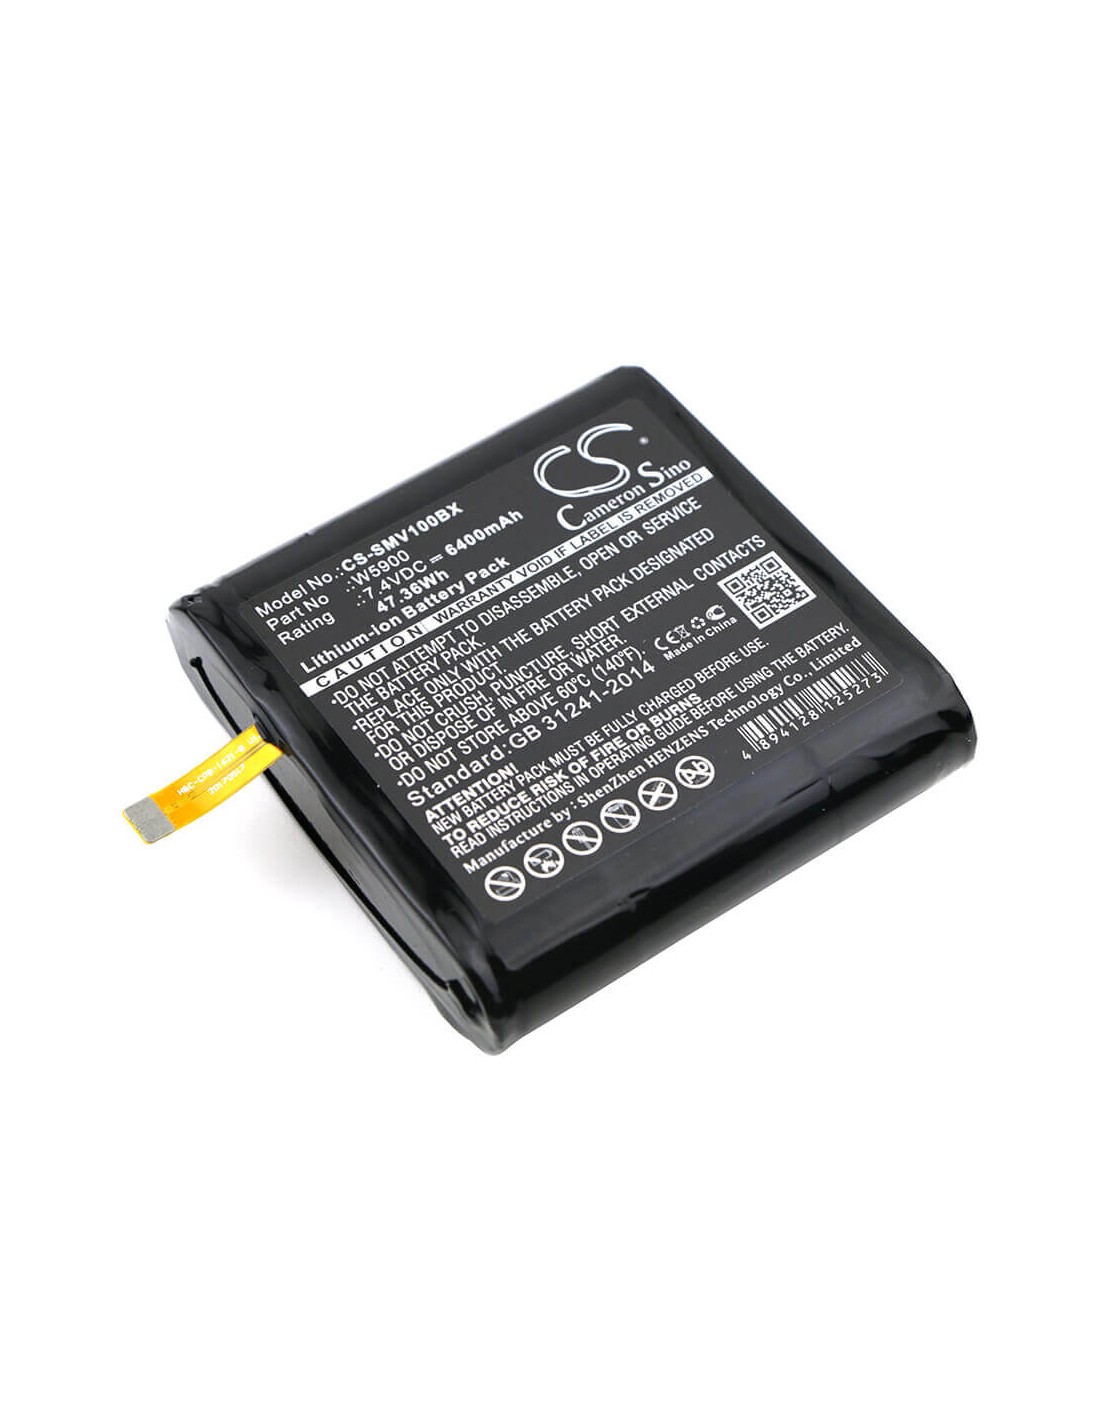 Battery for Sunmi, V1 7.4V, 6400mAh - 47.36Wh